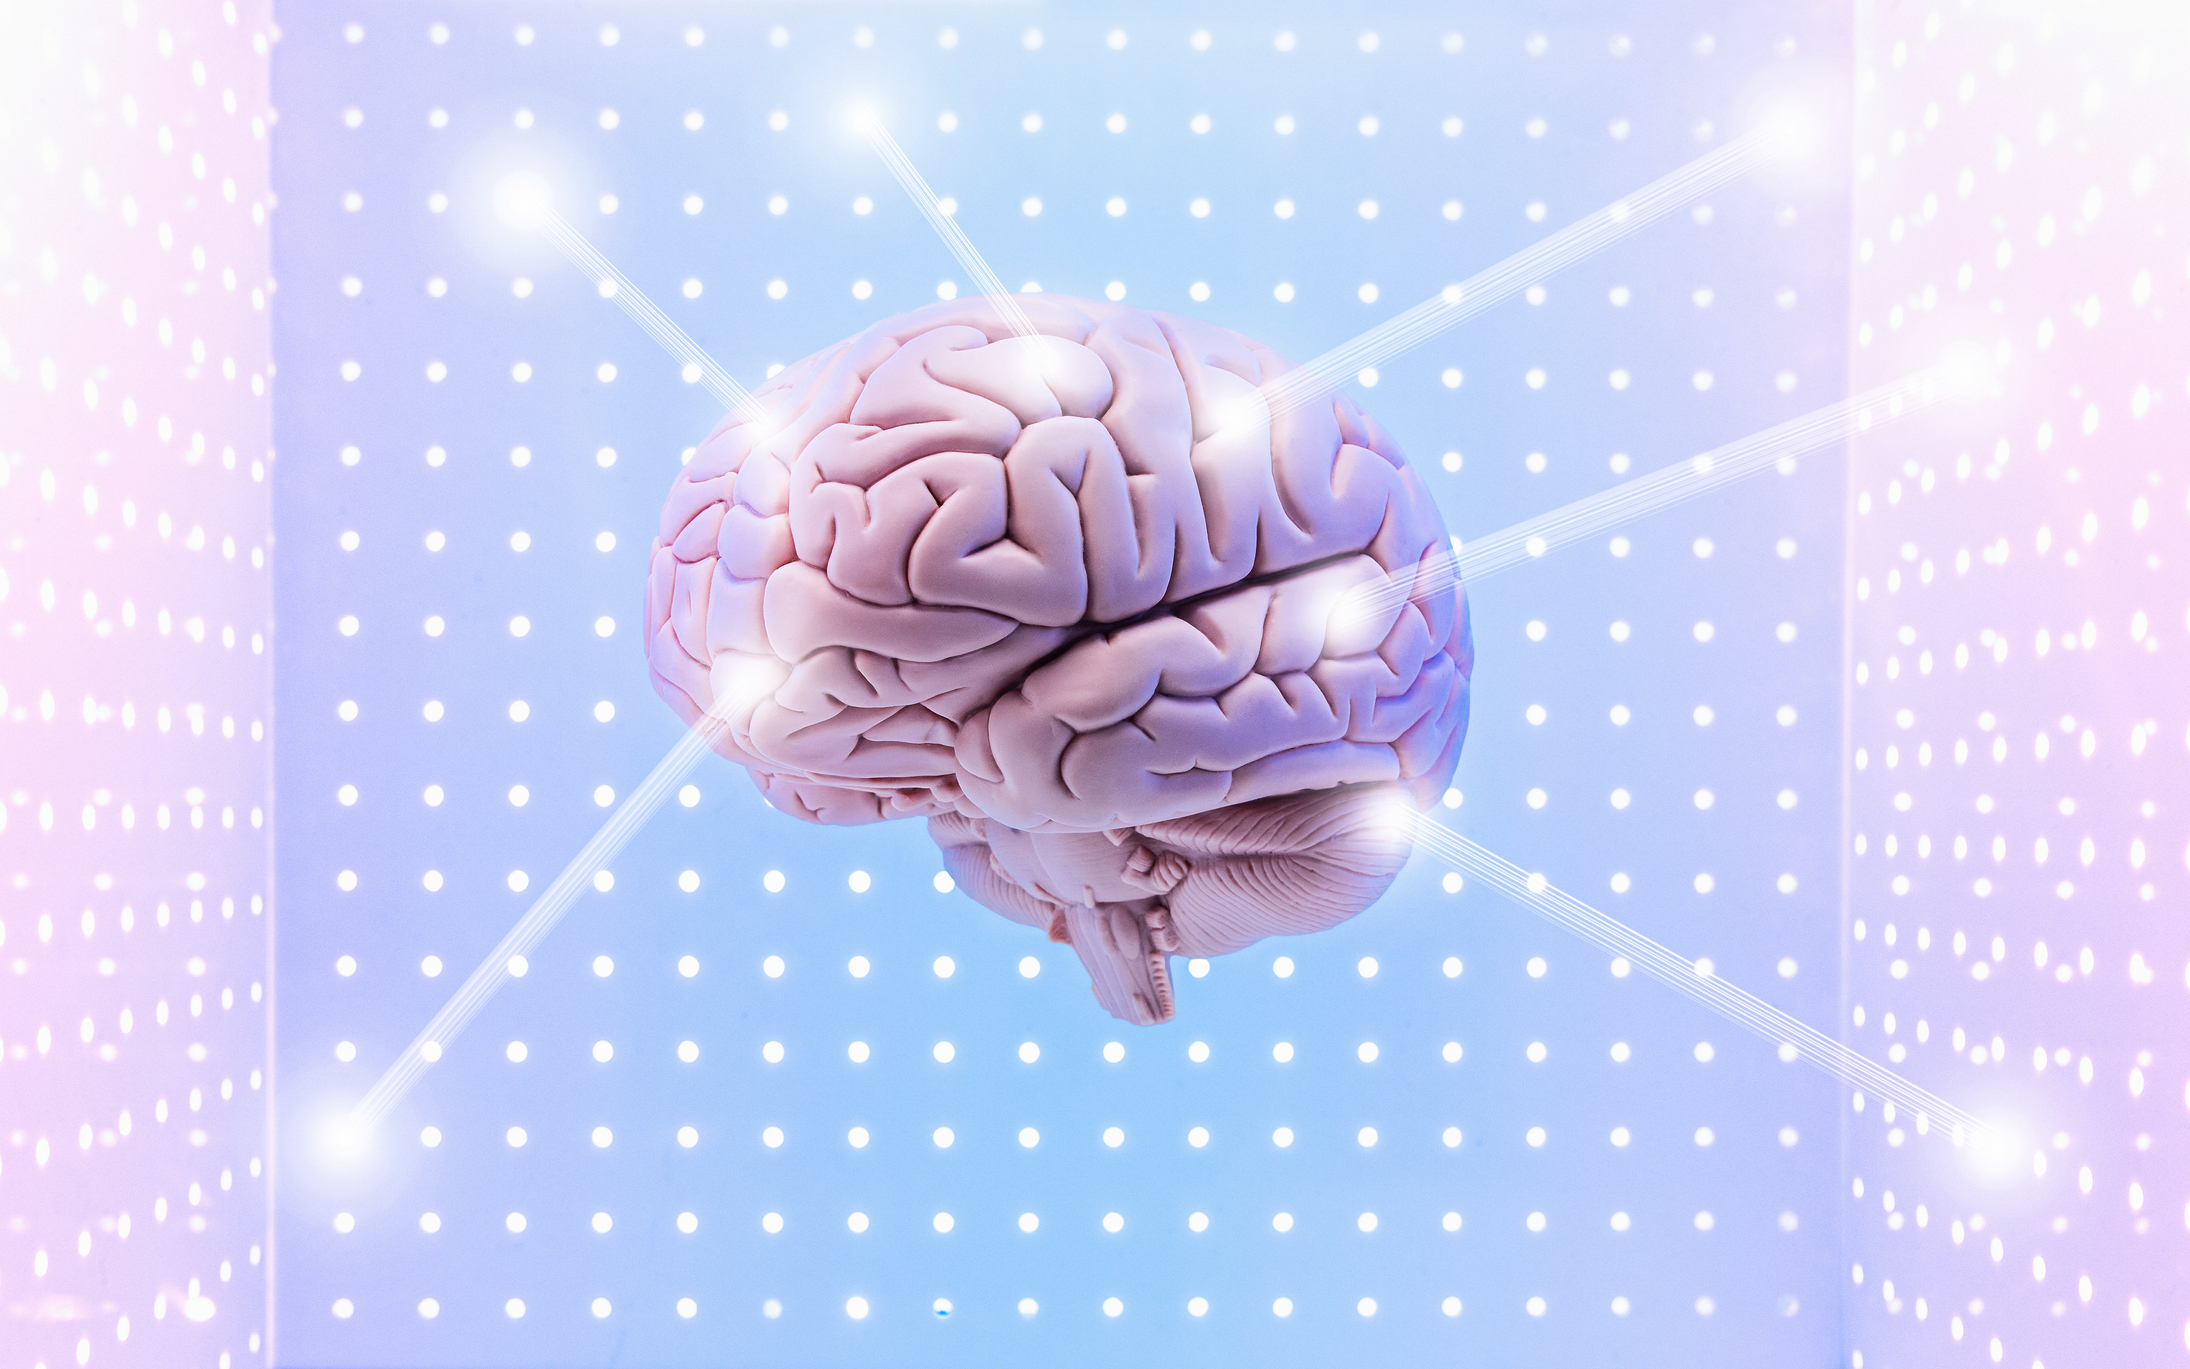 "El cerebro está adaptándose permanentemente al contexto, cambiando y generando miles de conexiones nuevas", aseguró Manes a Infobae (Getty Images)